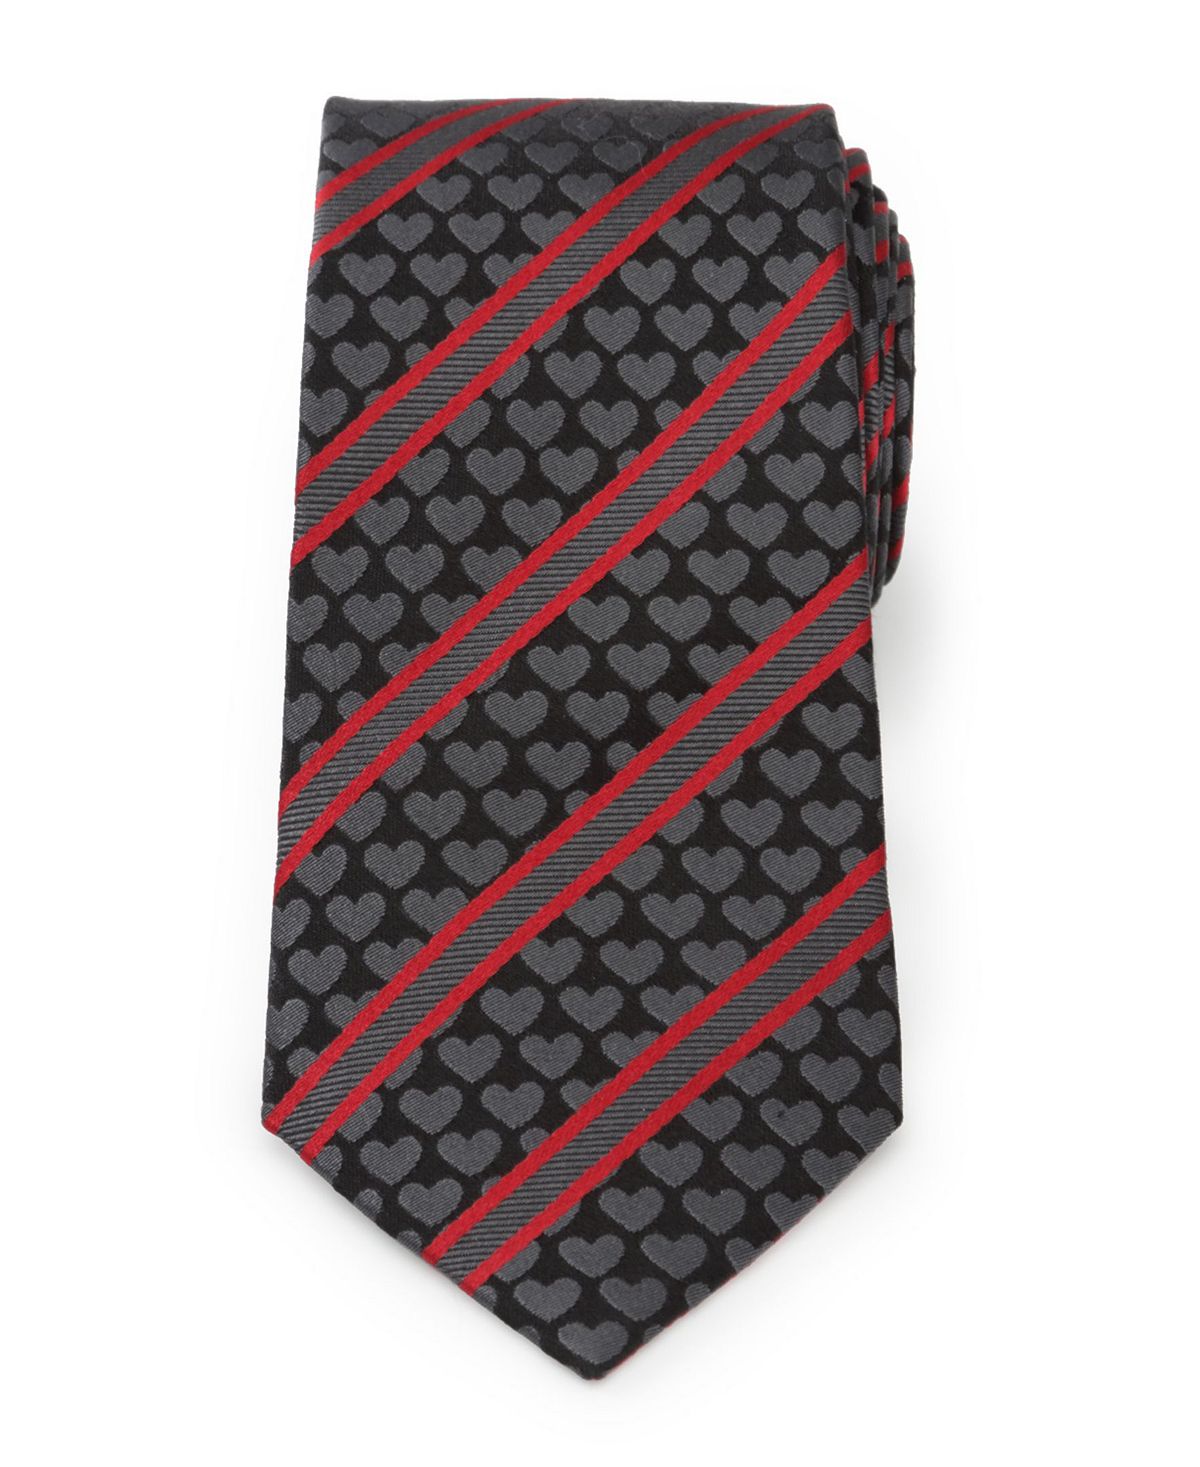 Мужской галстук в полоску с сердечками Cufflinks Inc. мужской галстук fleur de lis cufflinks inc